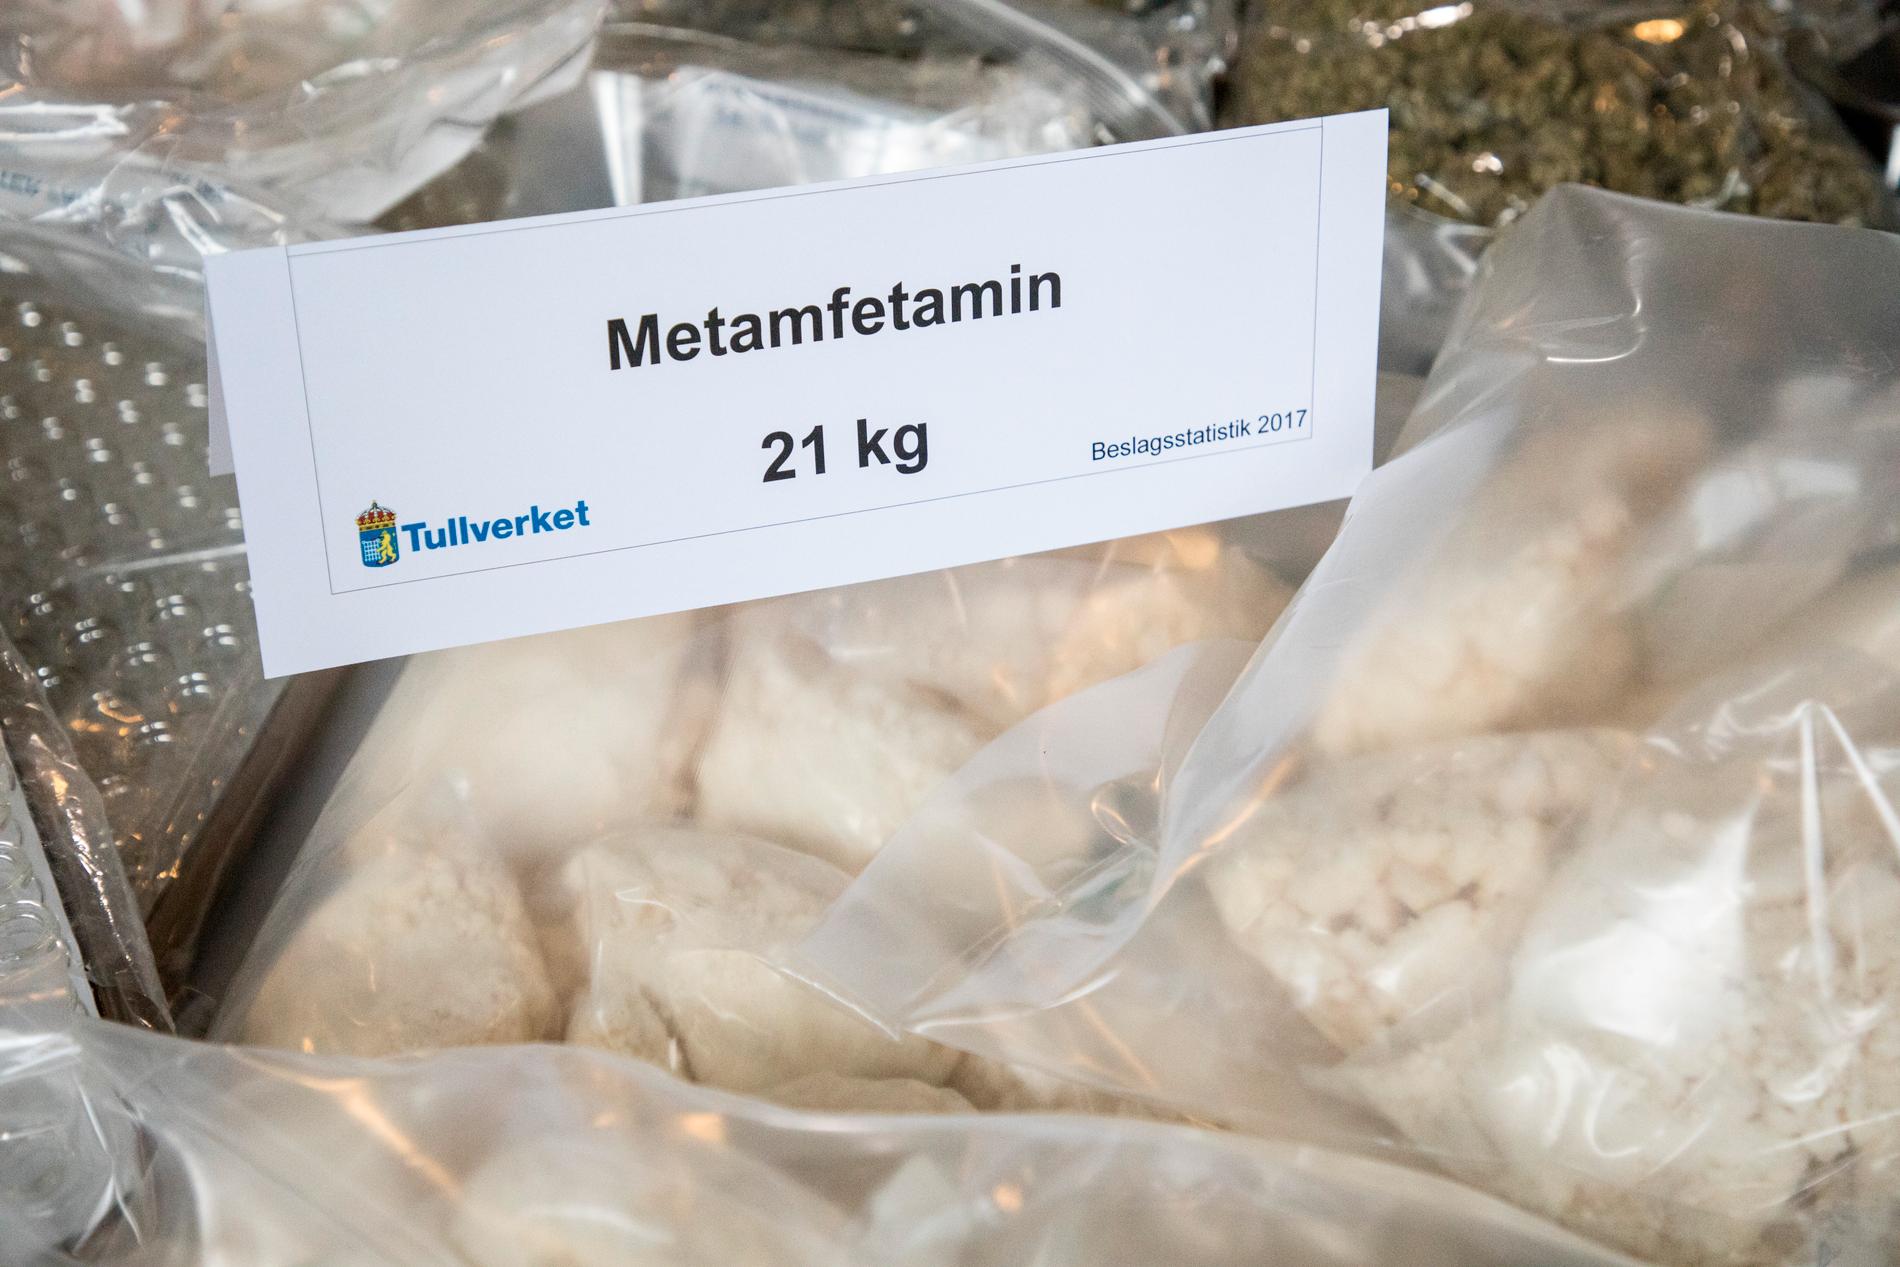 Metamfetamin som beslagtagits i Sverige. Arkivbild.